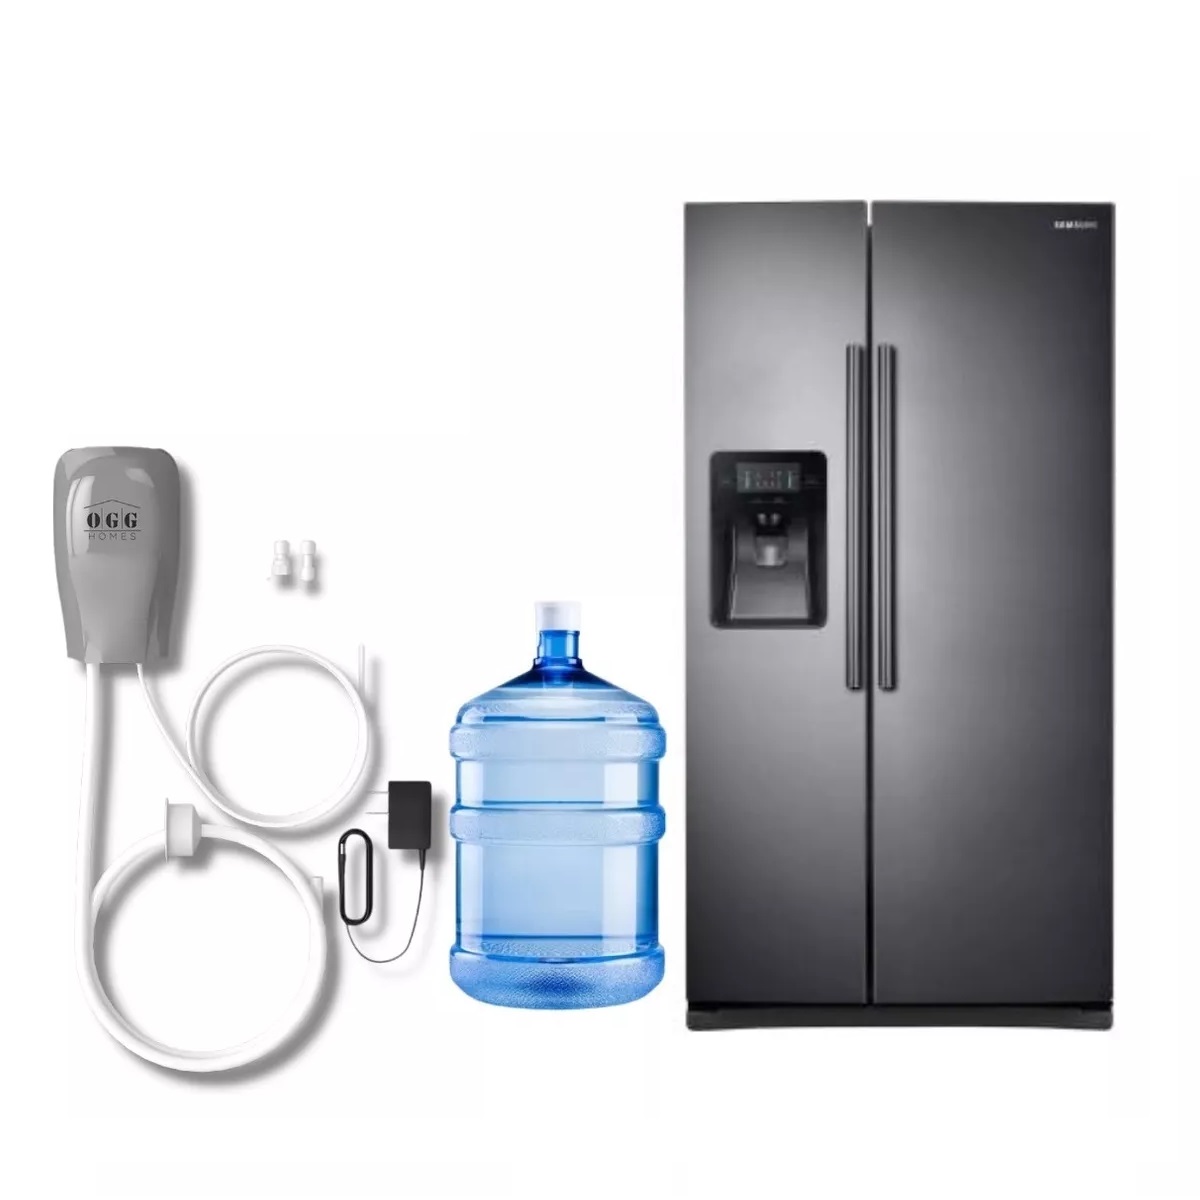 Dispensador de hielo y agua de refrigerador de plata Fotografía de